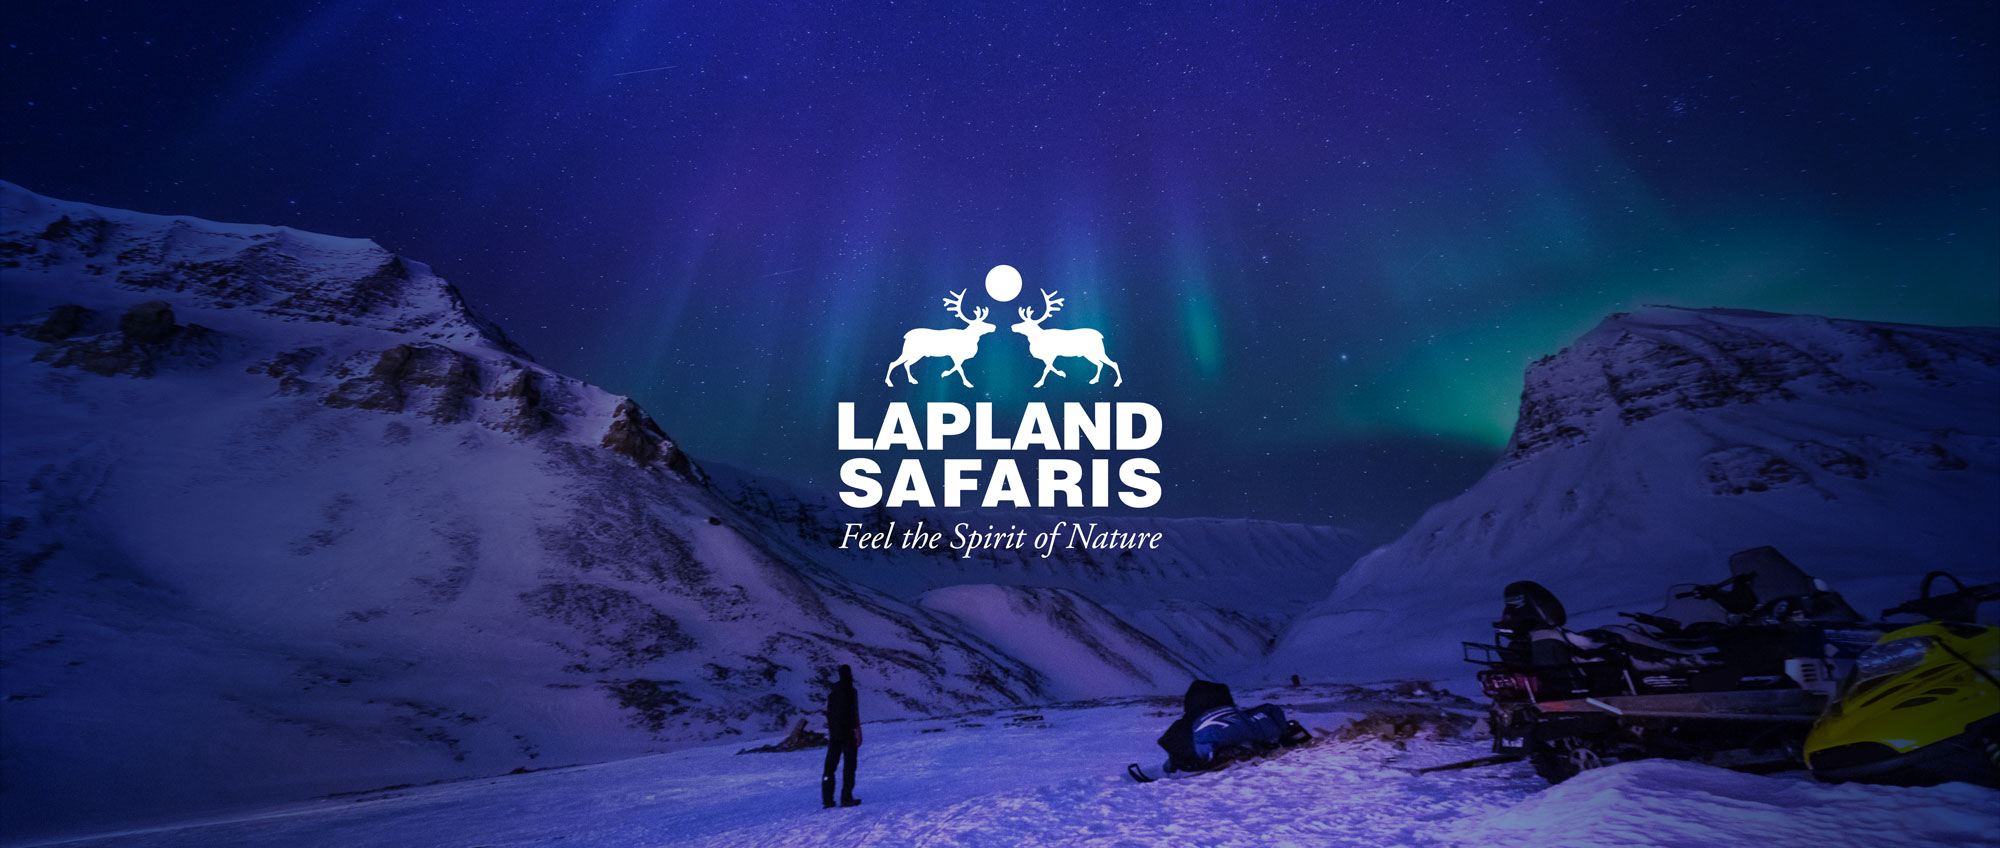 lapland safaris ac ltd